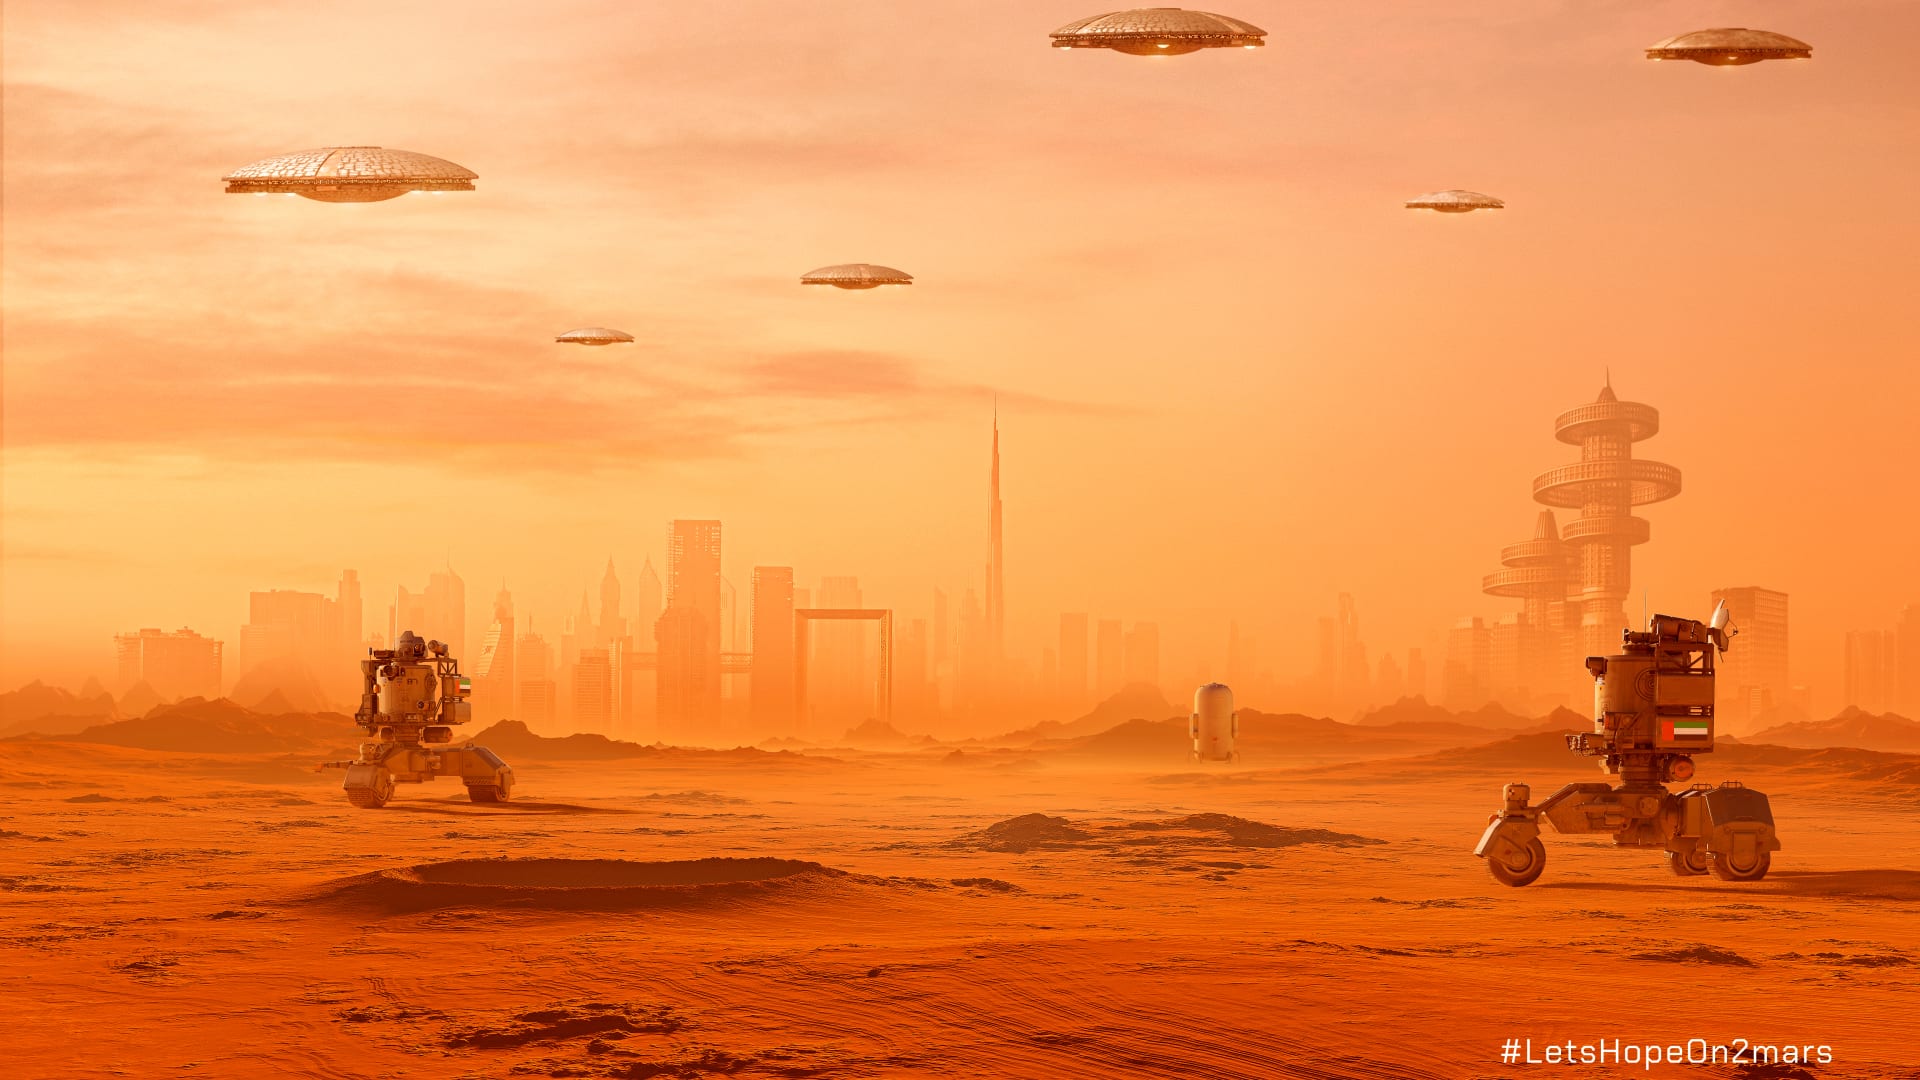 هندي يتخيل أول مستوطنة بشرية إماراتية على المريخ في عام 2117..كيف ستبدو؟